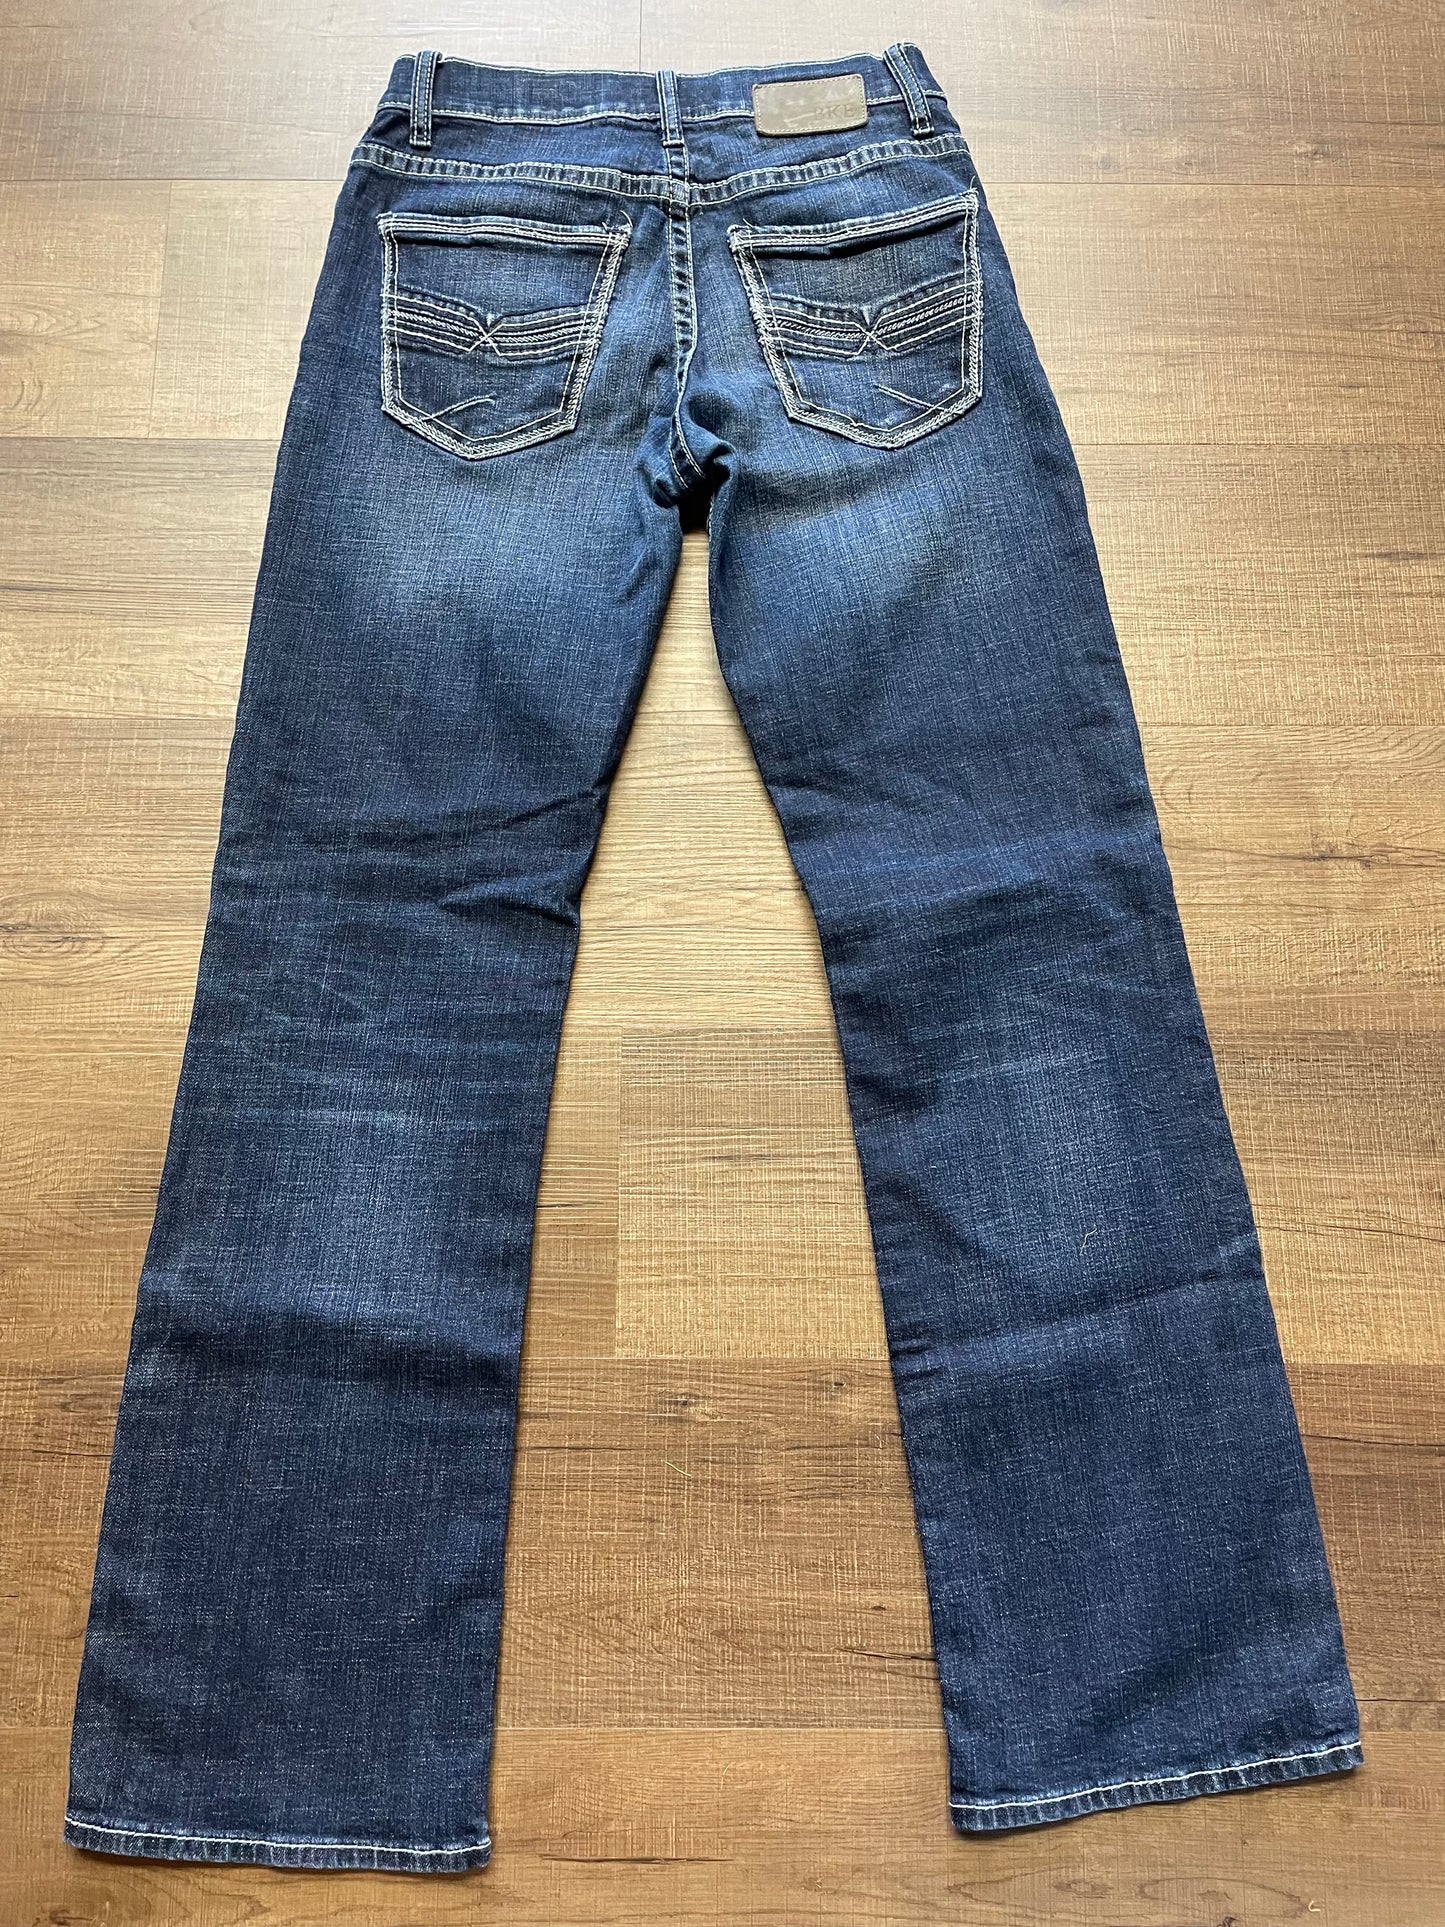 BKE Jake Bootleg Men's Jeans (29R)